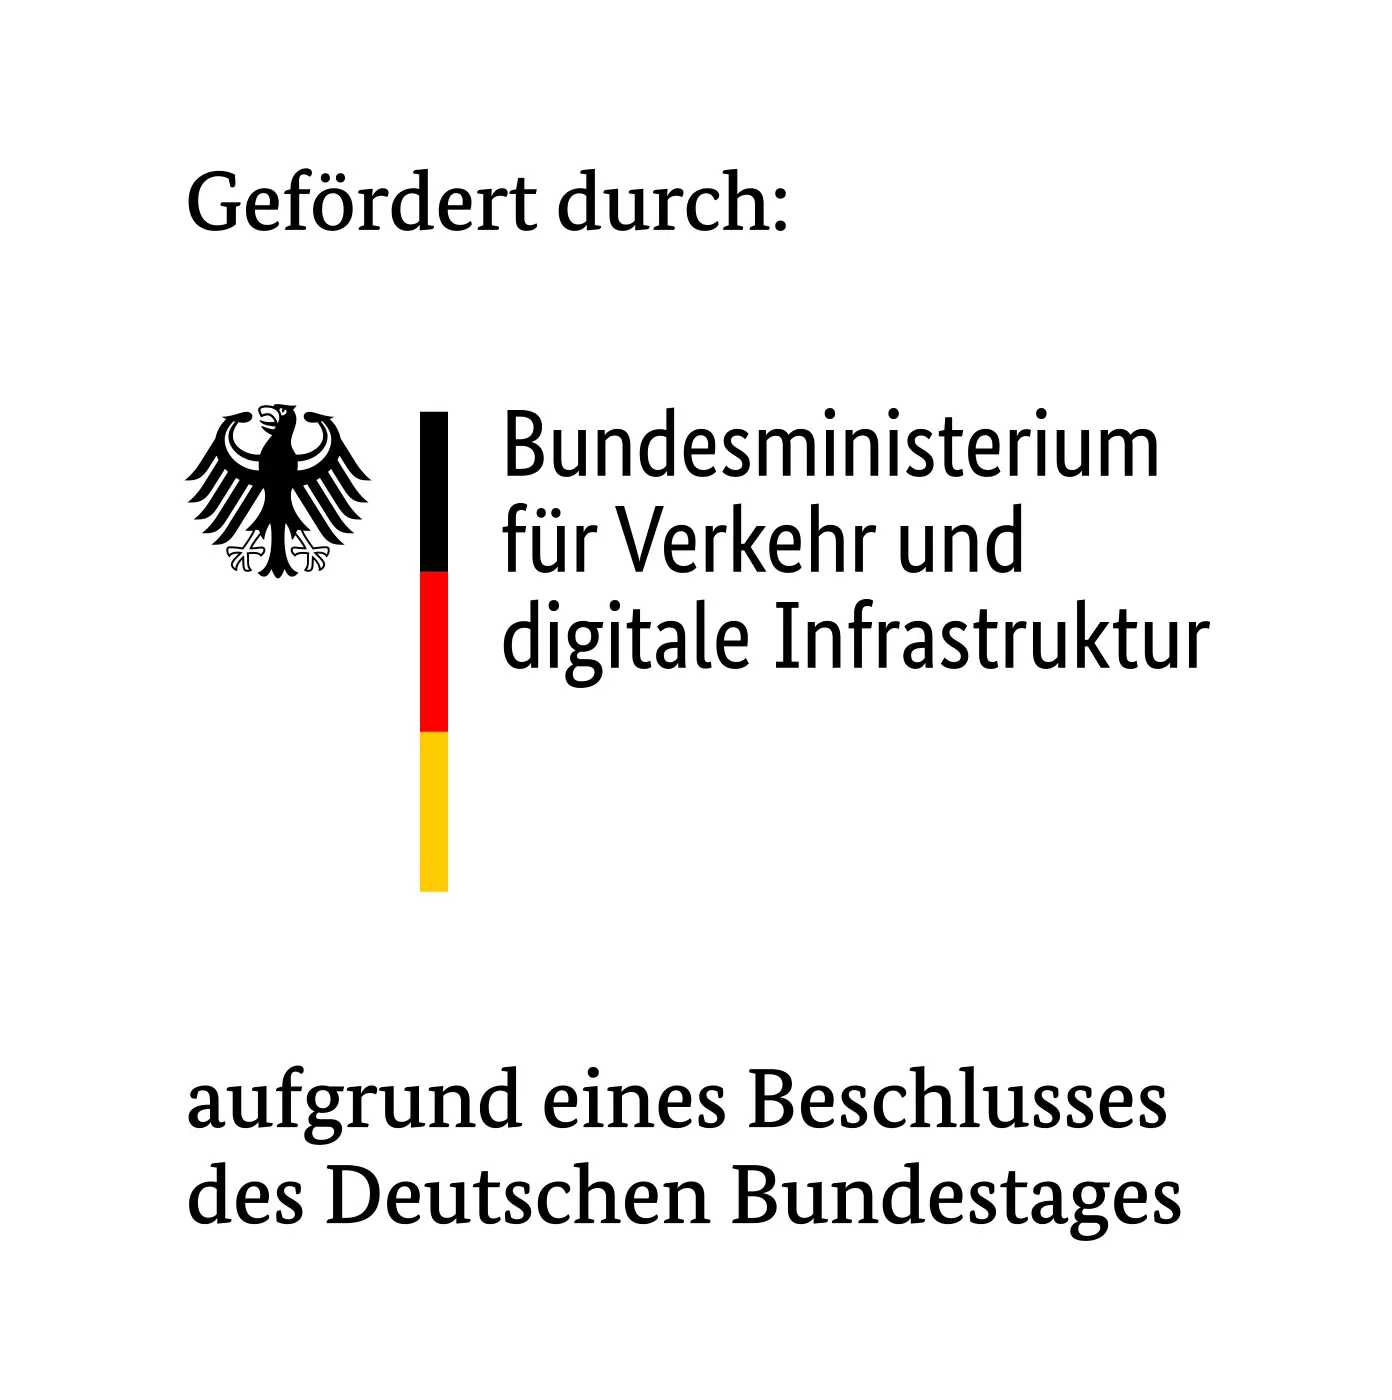 Gefördert durch: Bundesministerium für Verkehr und digitale Infrastruktur auf der Grundlage einer Entscheidung des Deutschen Bundestages